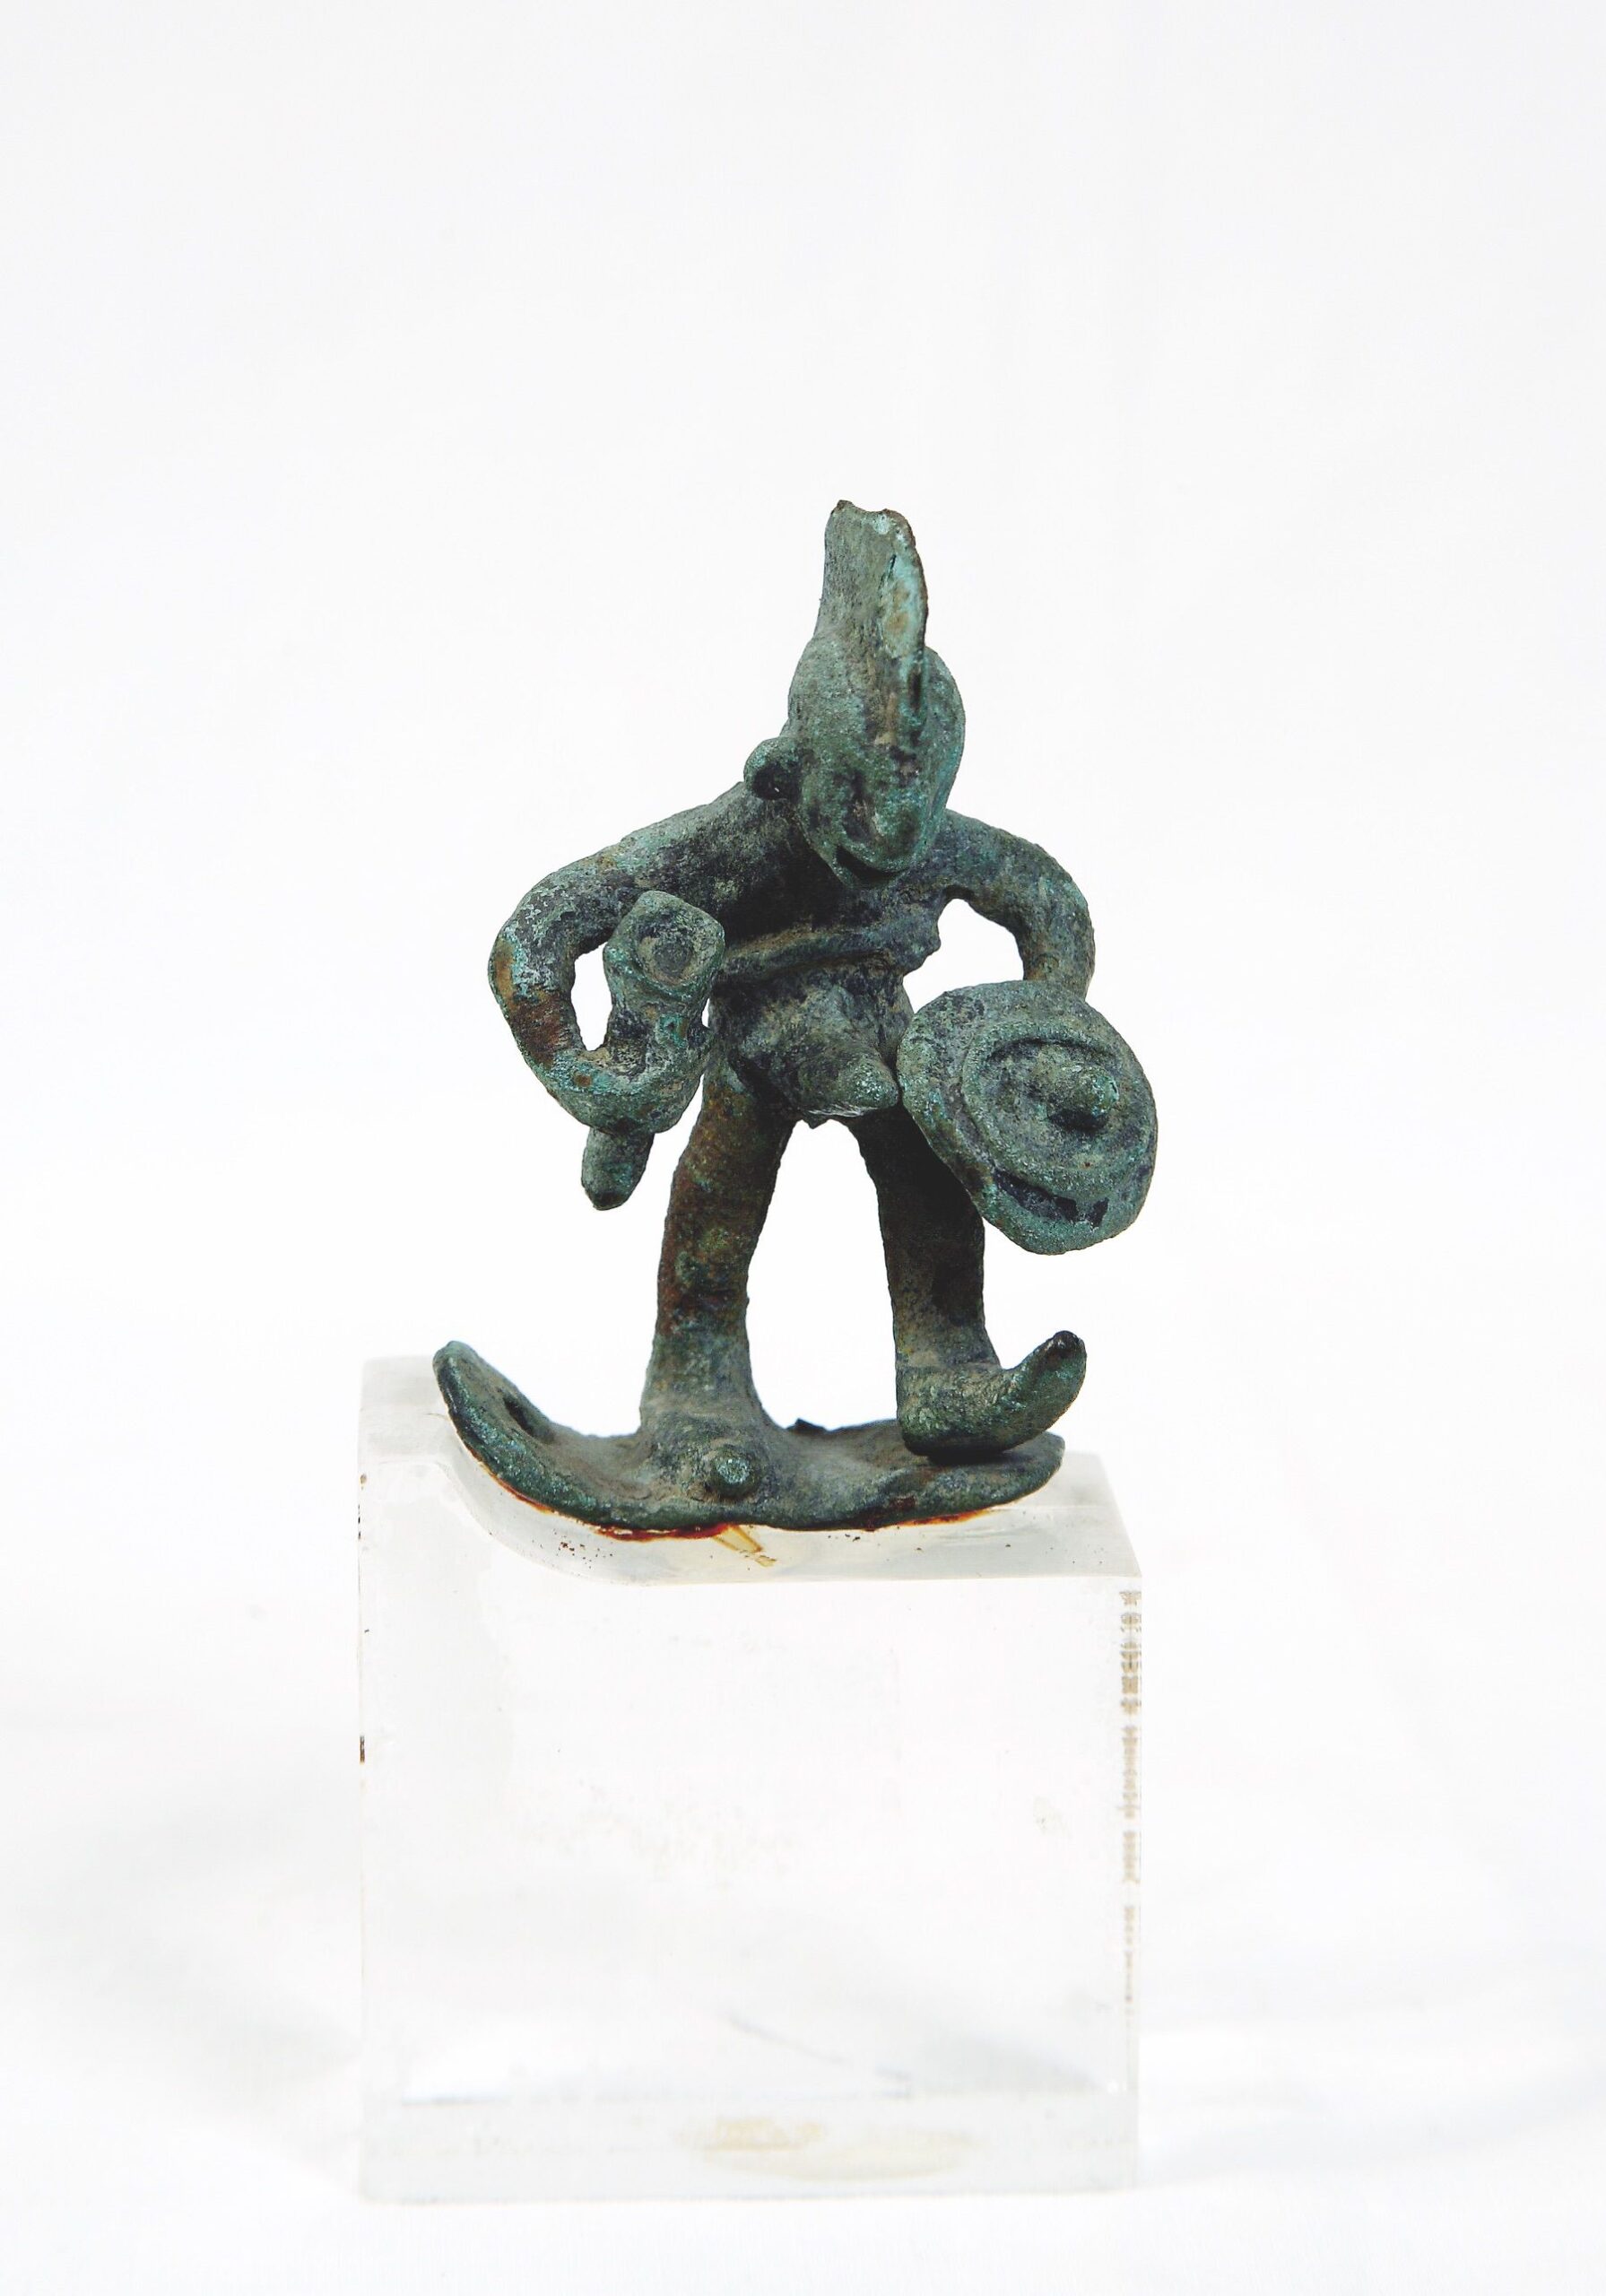 79. Figurina di guerriero in bronzo. Da Petralia Sottana. Datazione incerta.